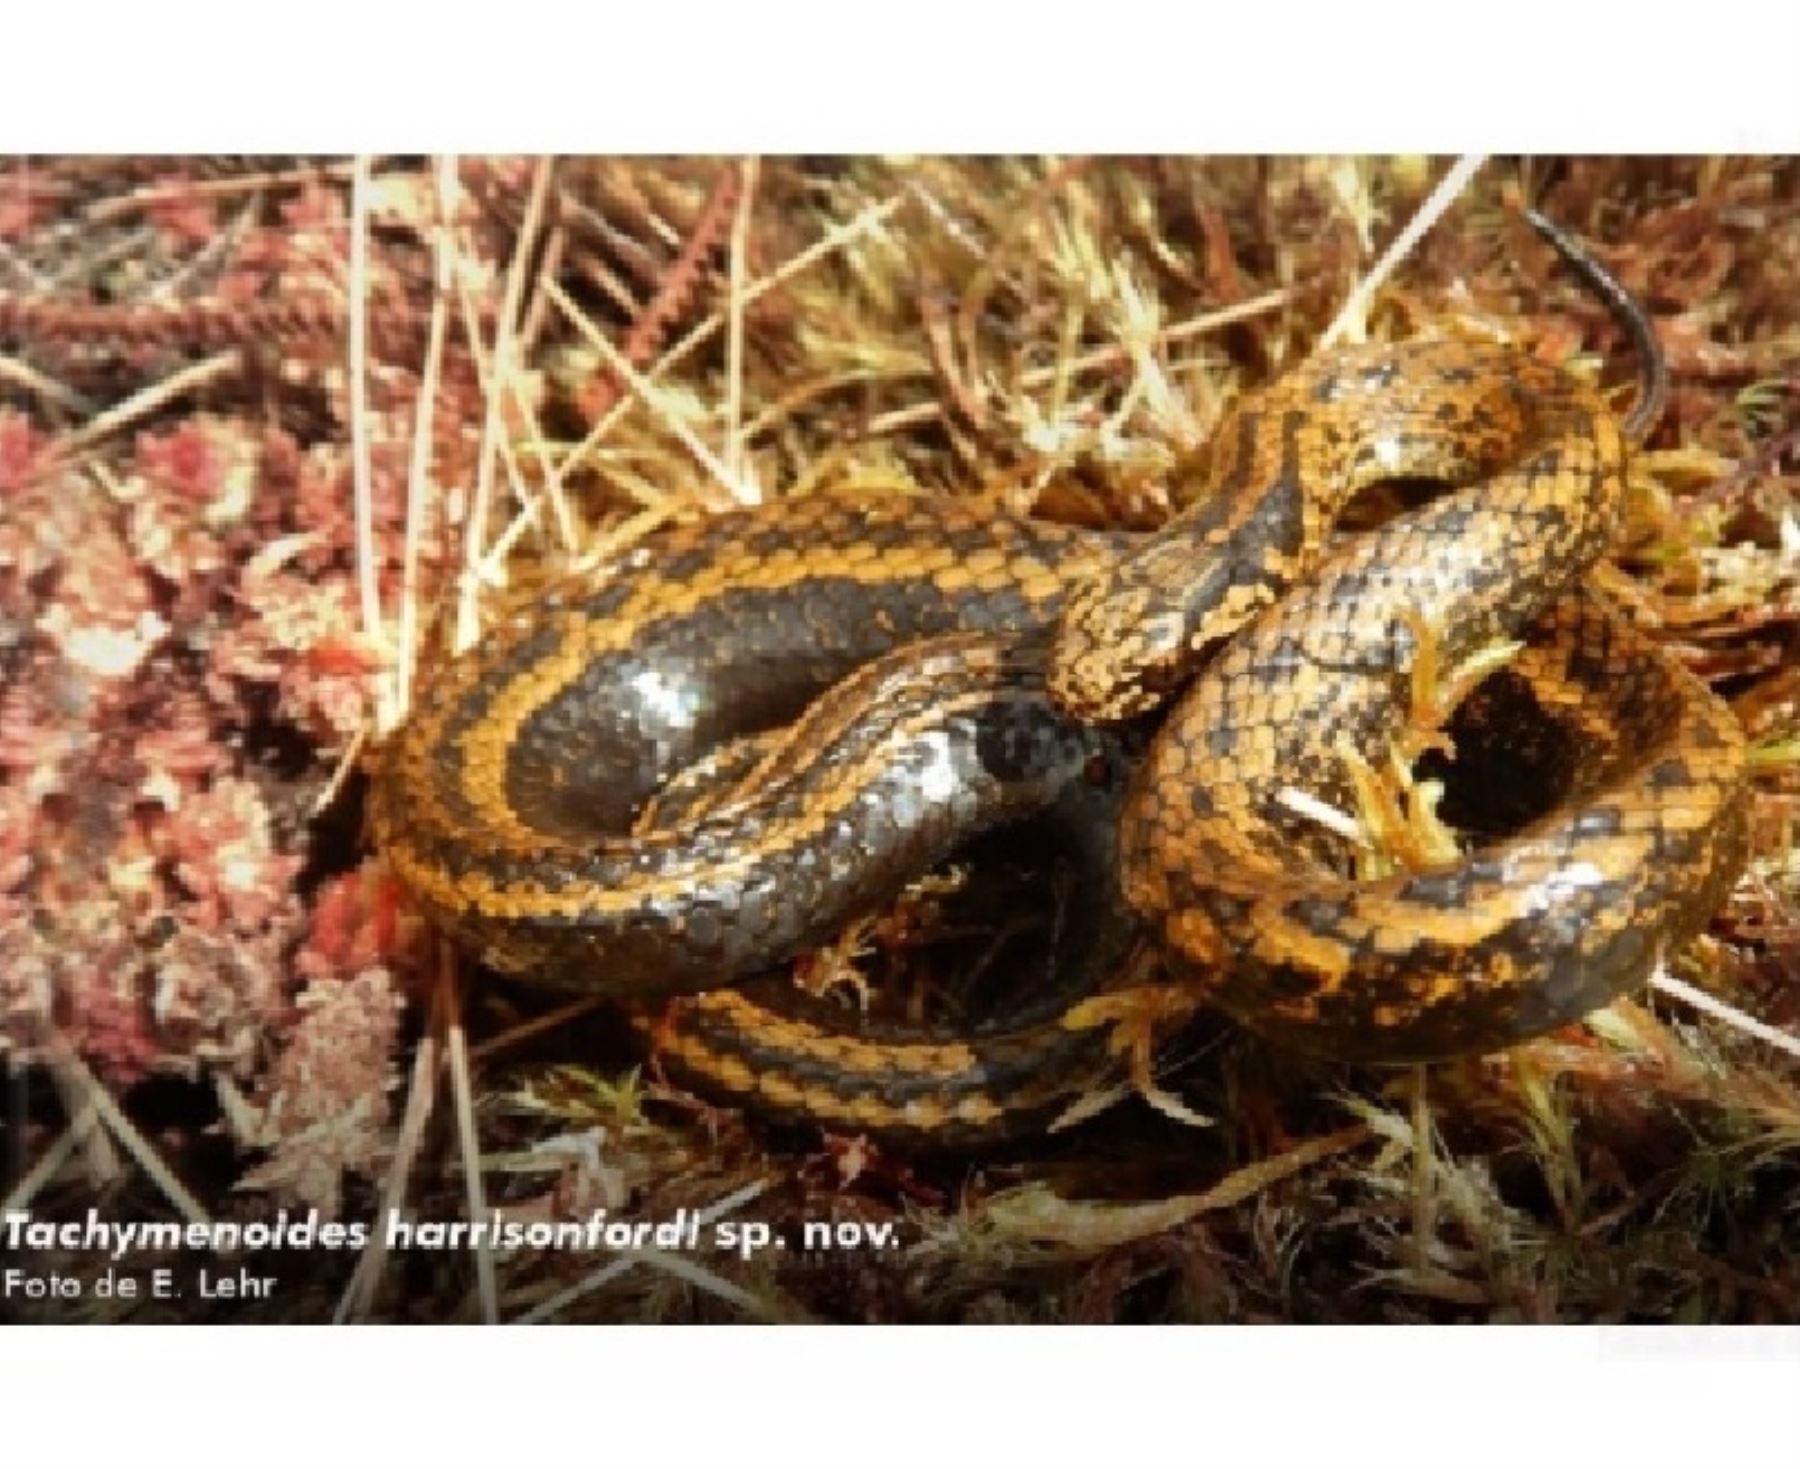 Hallan nueva especie de serpiente en Perú y científicos la bautizan como Harrison Ford, en reconocimiento a su trabajo a favor de la conservación.